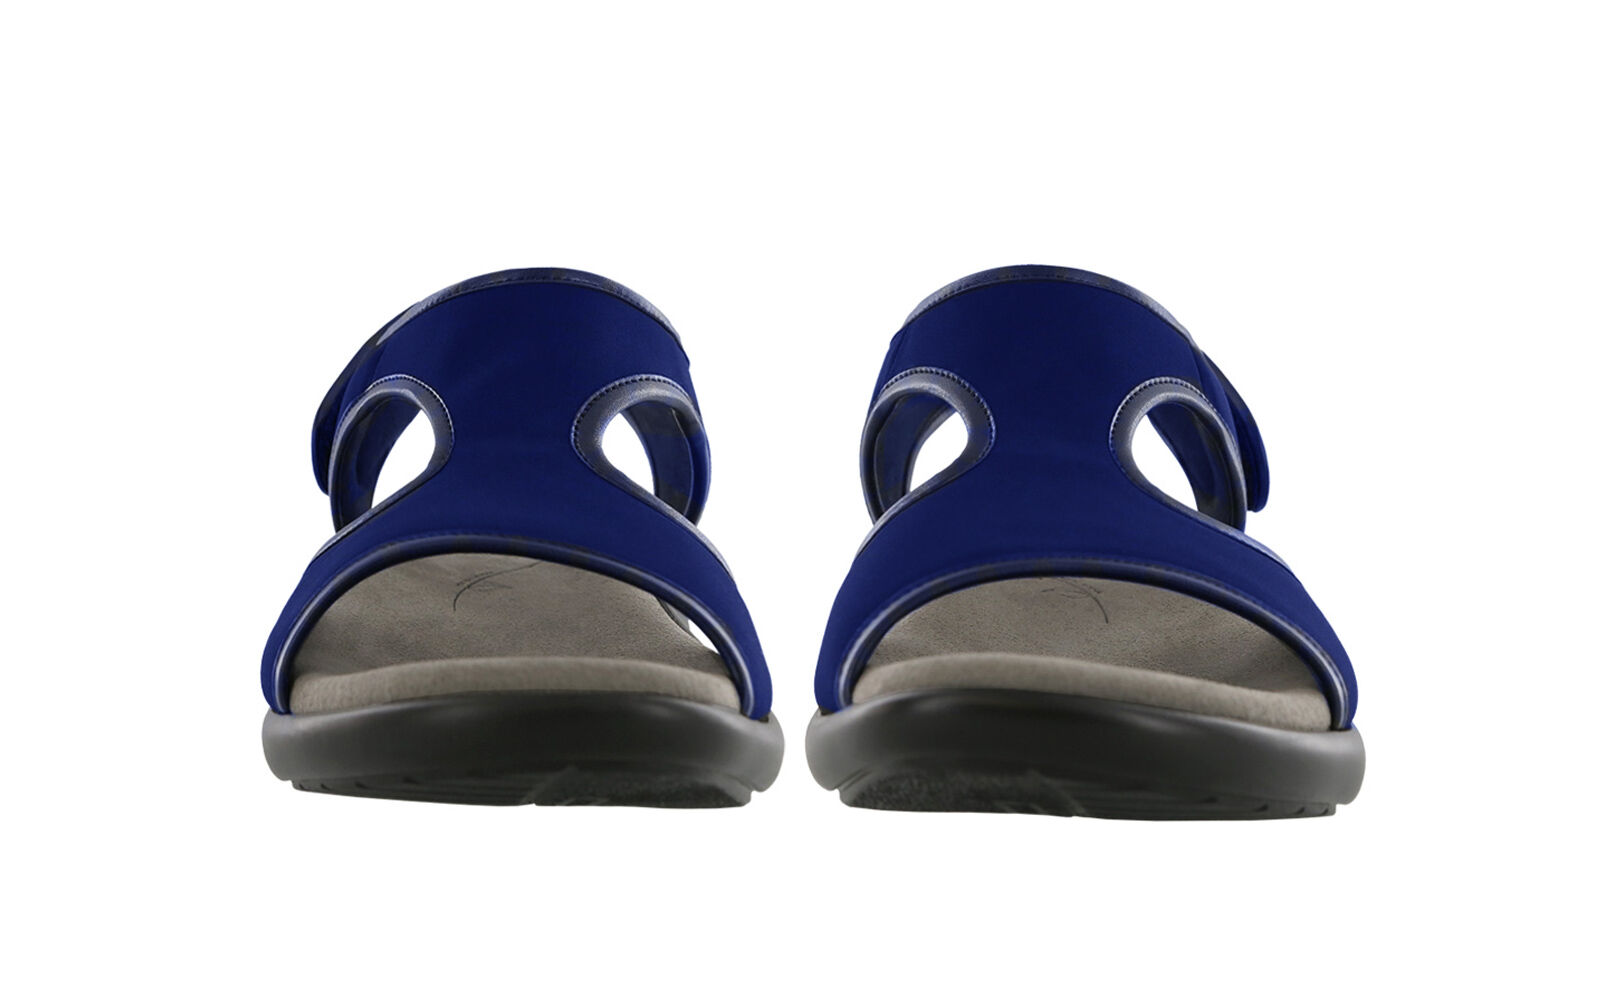 flip flops with heel strap